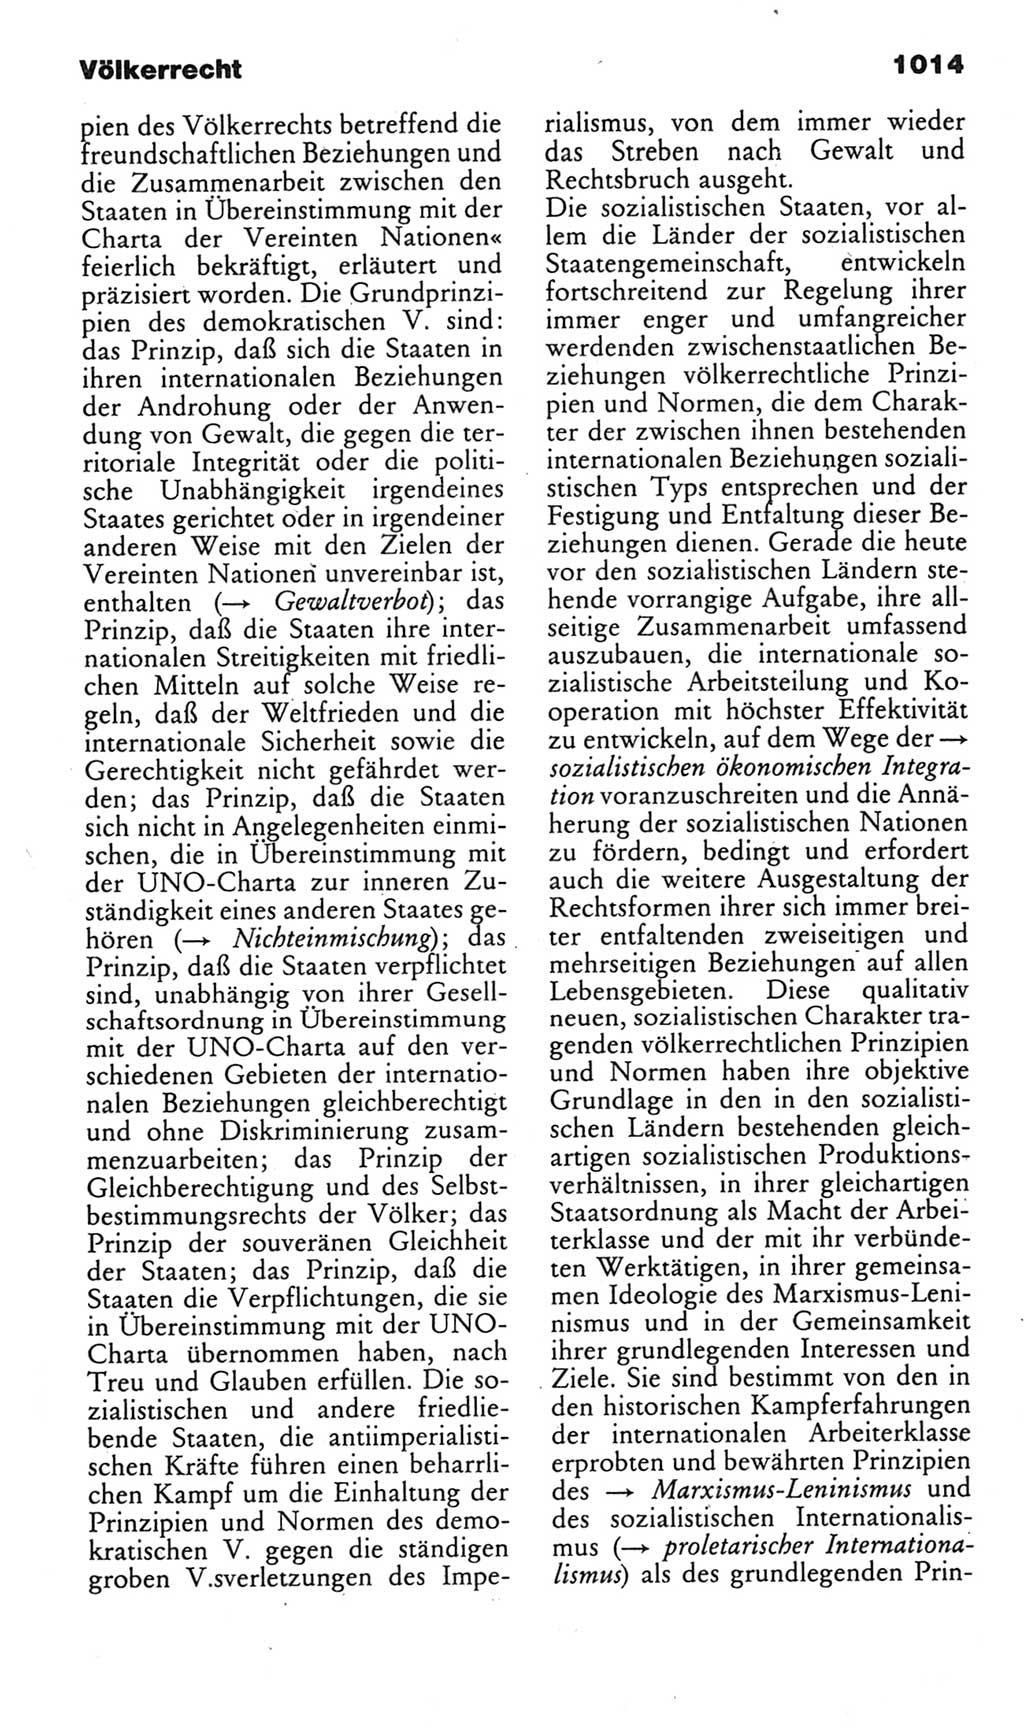 Kleines politisches Wörterbuch [Deutsche Demokratische Republik (DDR)] 1985, Seite 1014 (Kl. pol. Wb. DDR 1985, S. 1014)